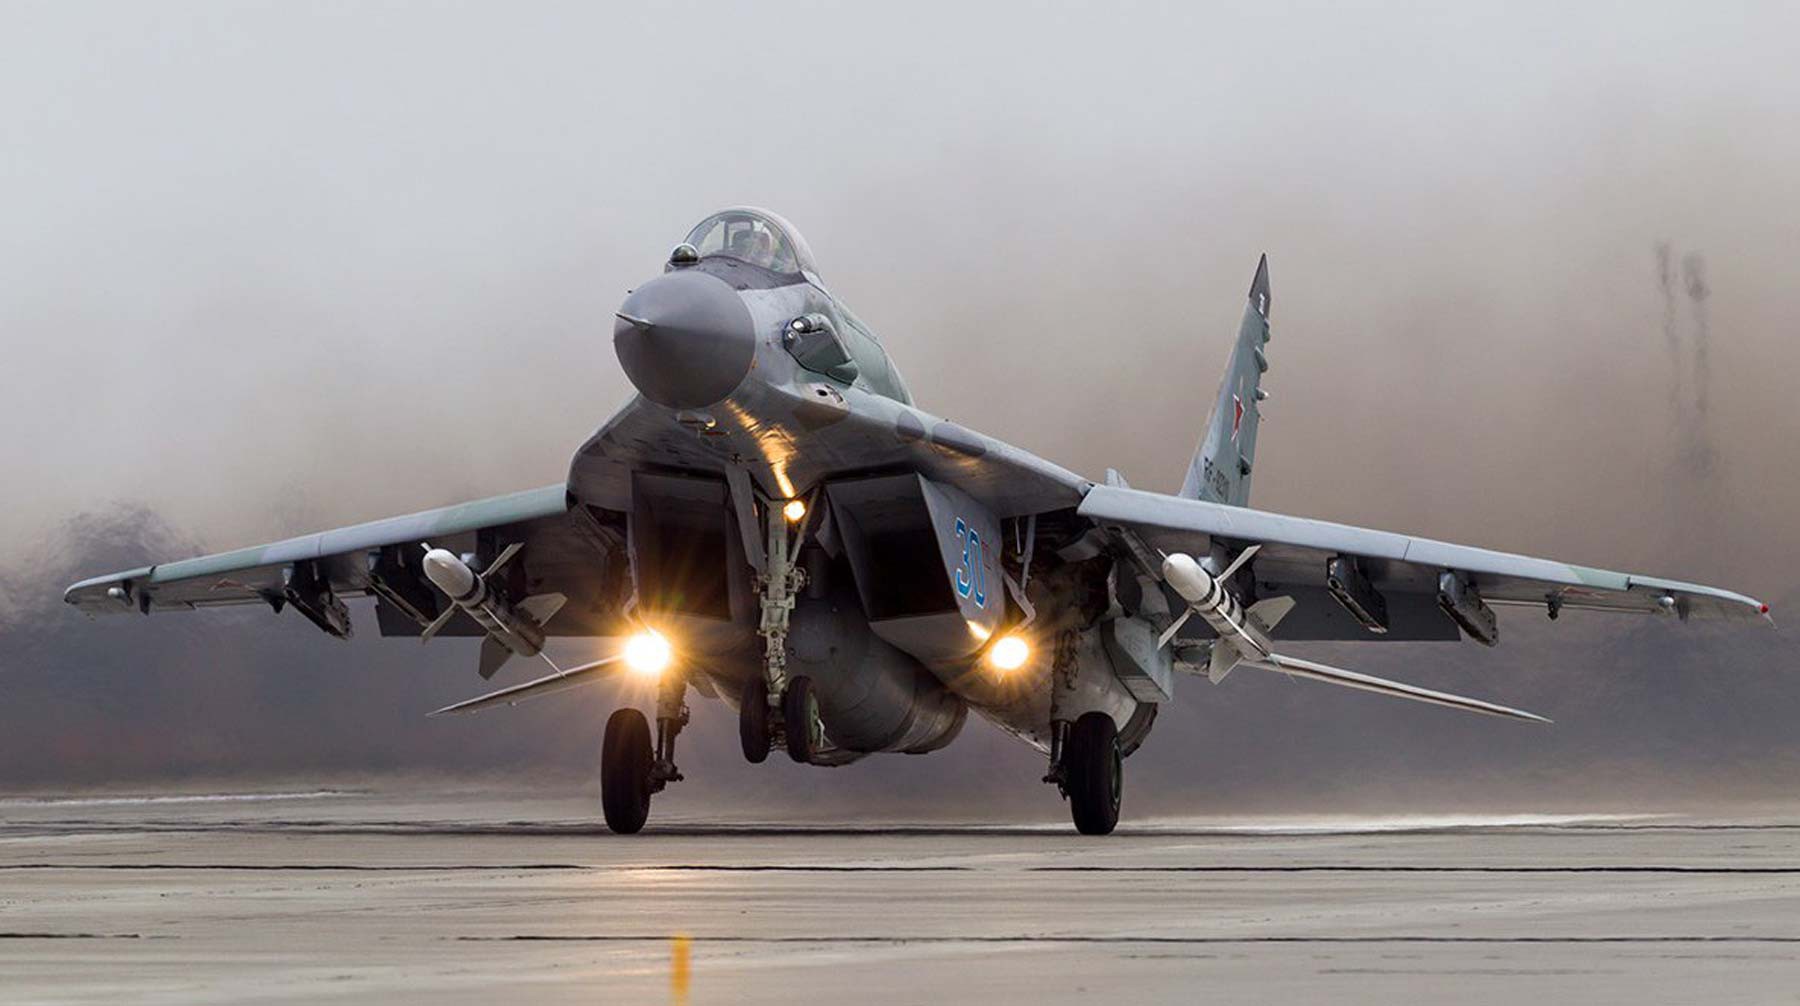 Dailystorm - Азербайджанский МиГ-29 упал в Каспийское море, ведется поиск пилота